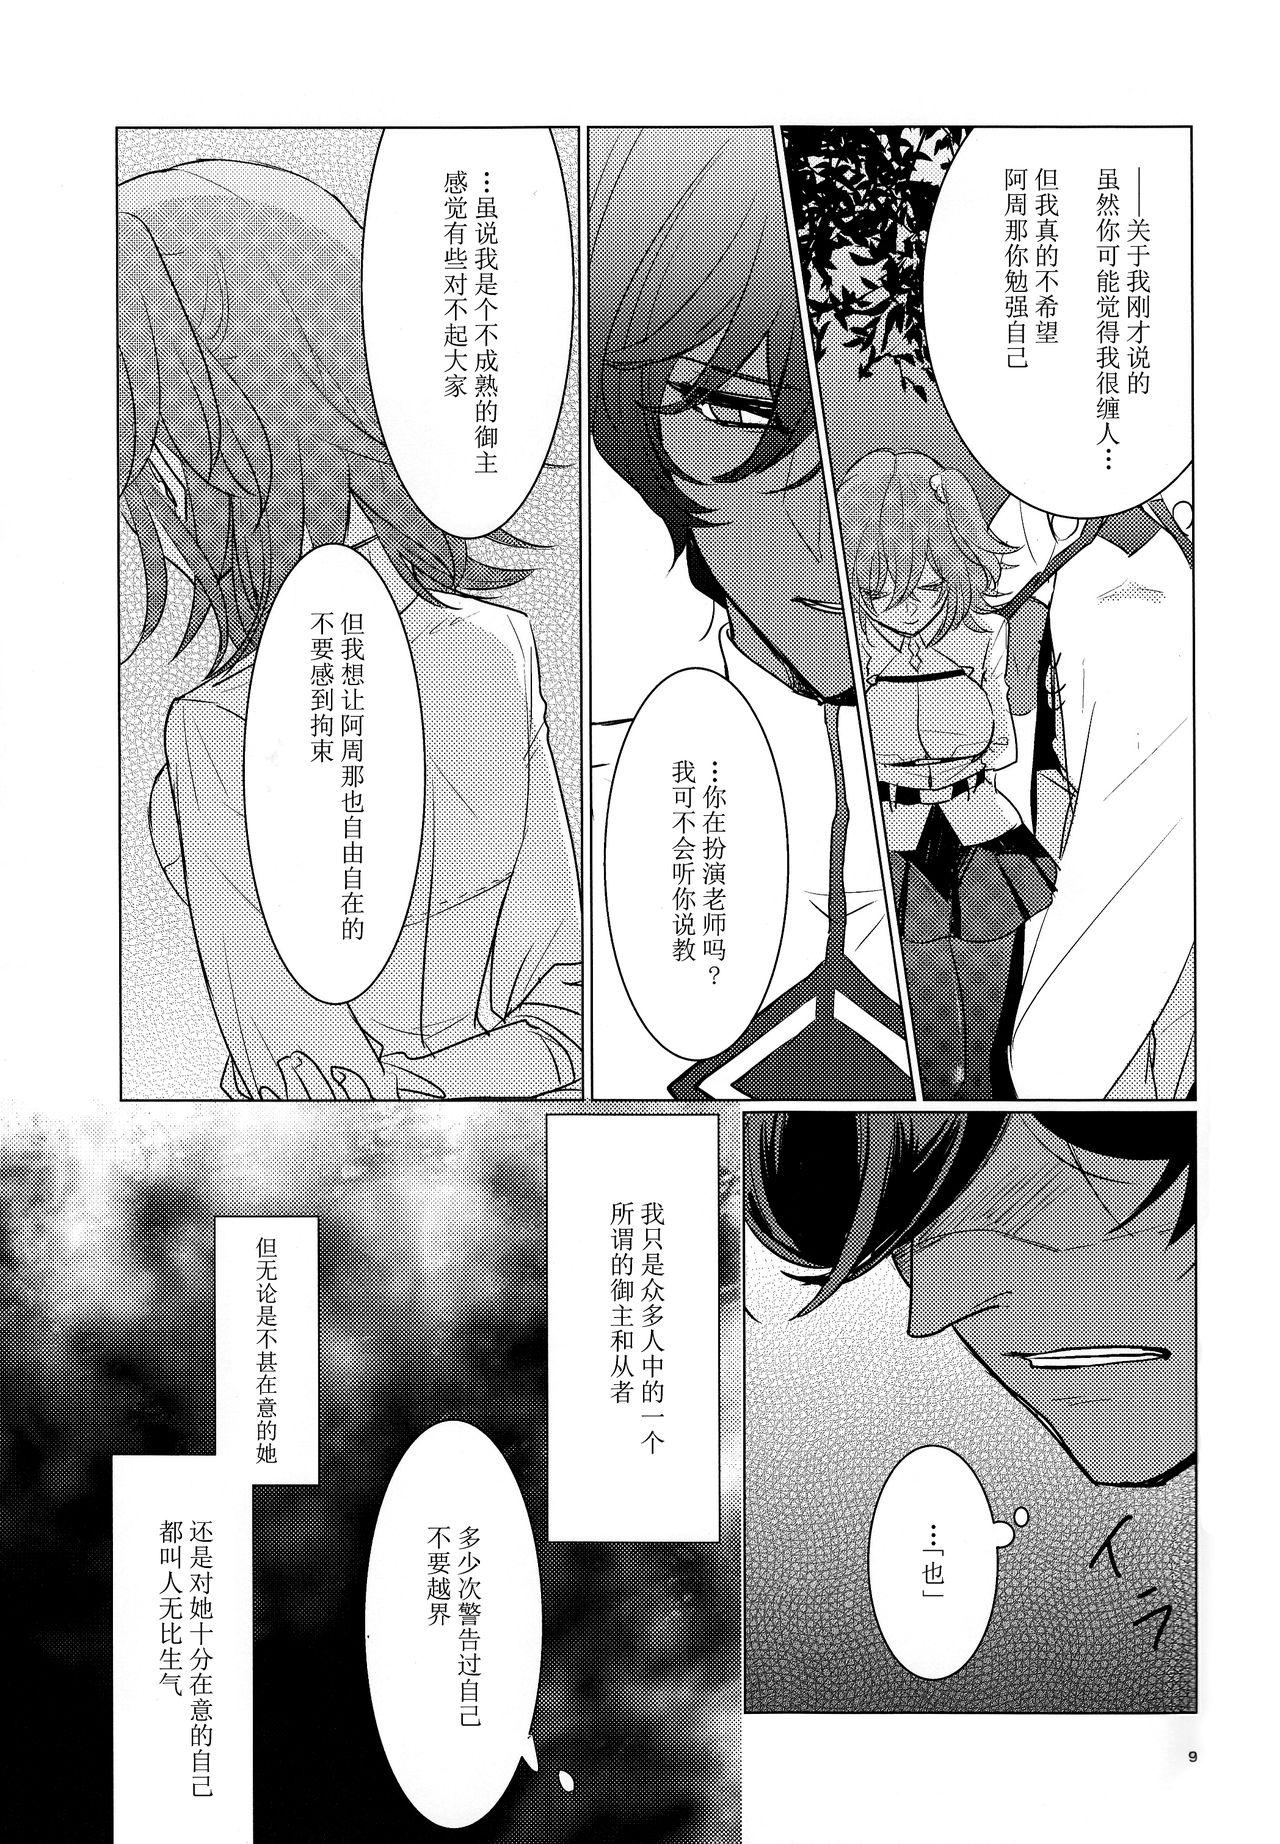 Threesome Yozora no Hoshi no Manten no shita - Fate grand order Kink - Page 9